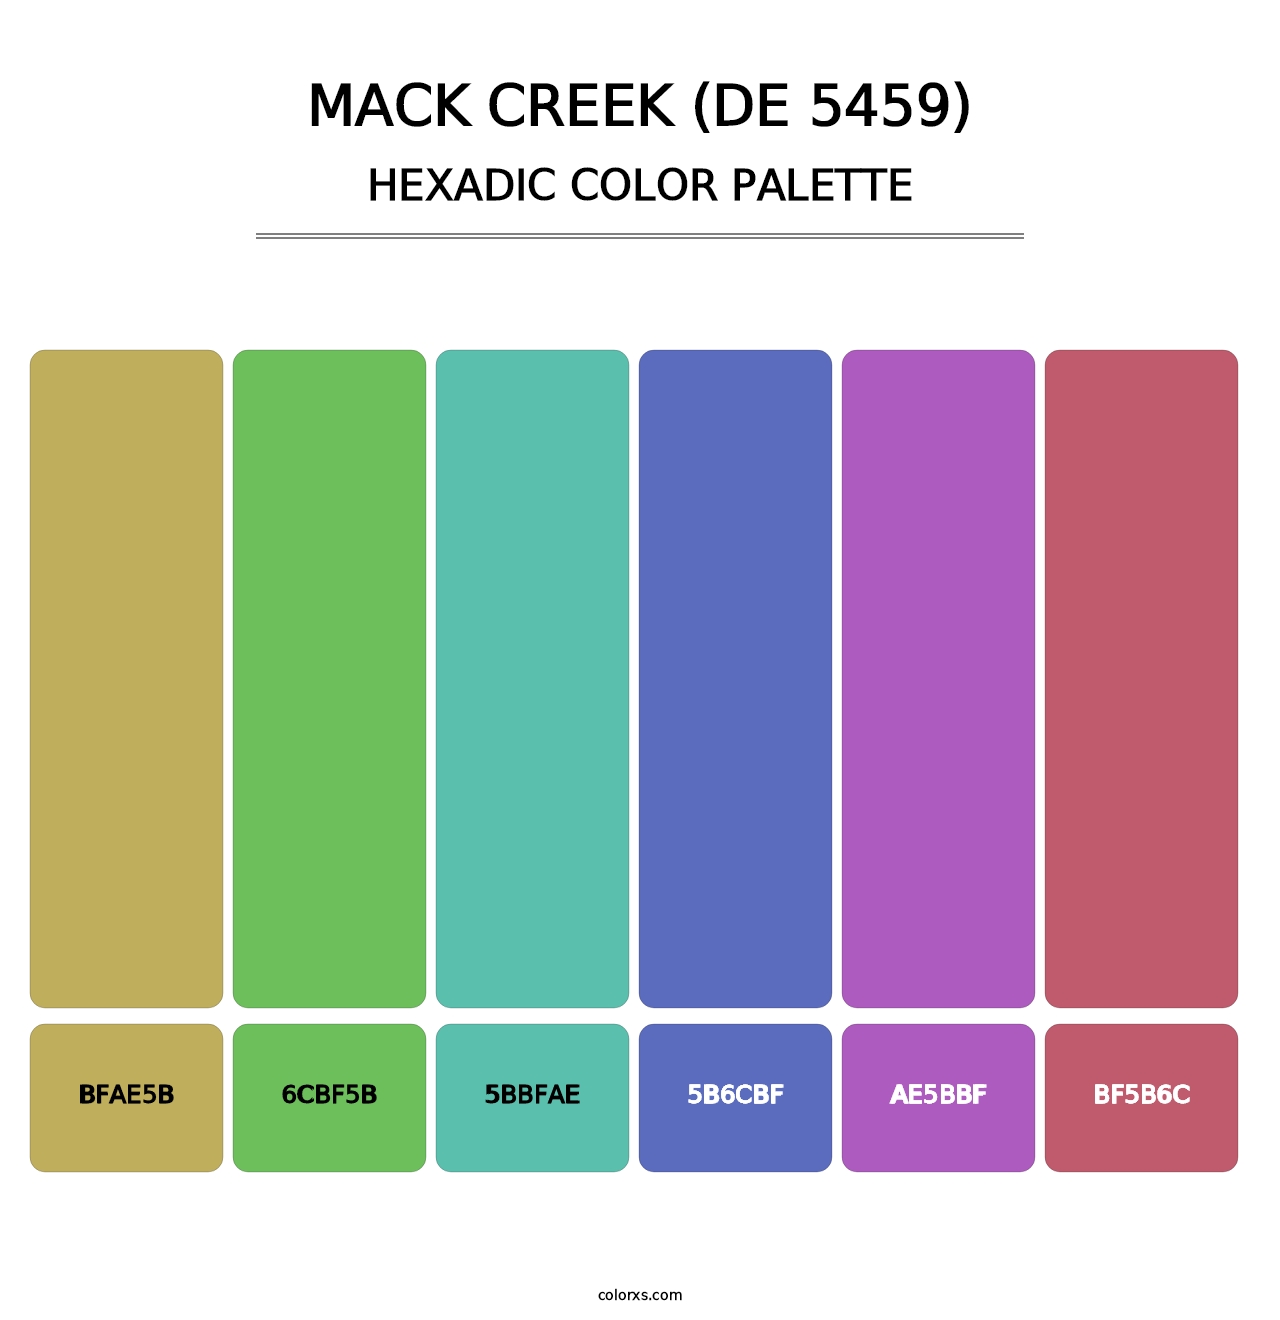 Mack Creek (DE 5459) - Hexadic Color Palette